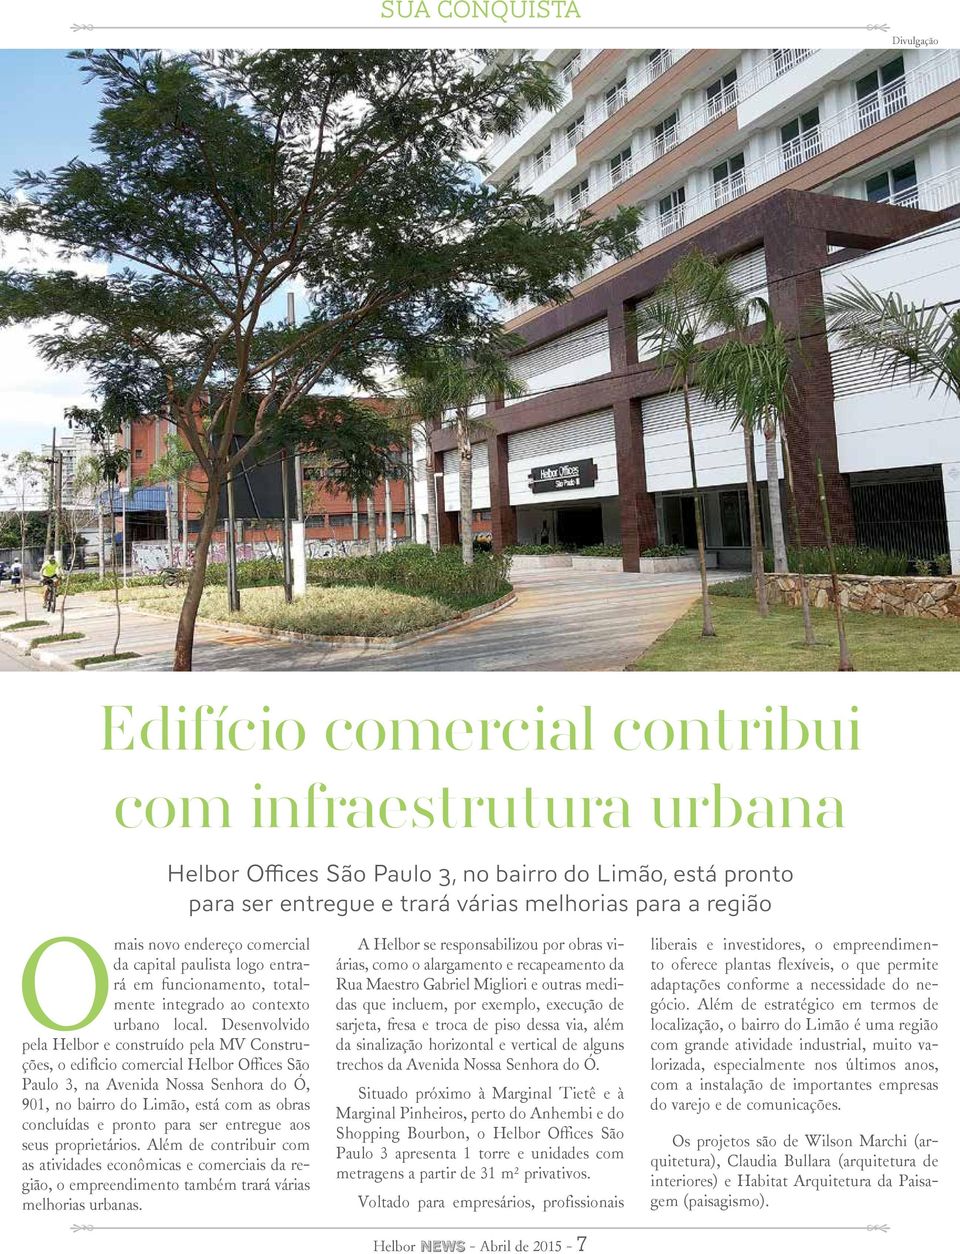 Desenvolvido pela Helbor e construído pela MV Construções, o edifício comercial Helbor Offices São Paulo 3, na Avenida Nossa Senhora do Ó, 901, no bairro do Limão, está com as obras concluídas e